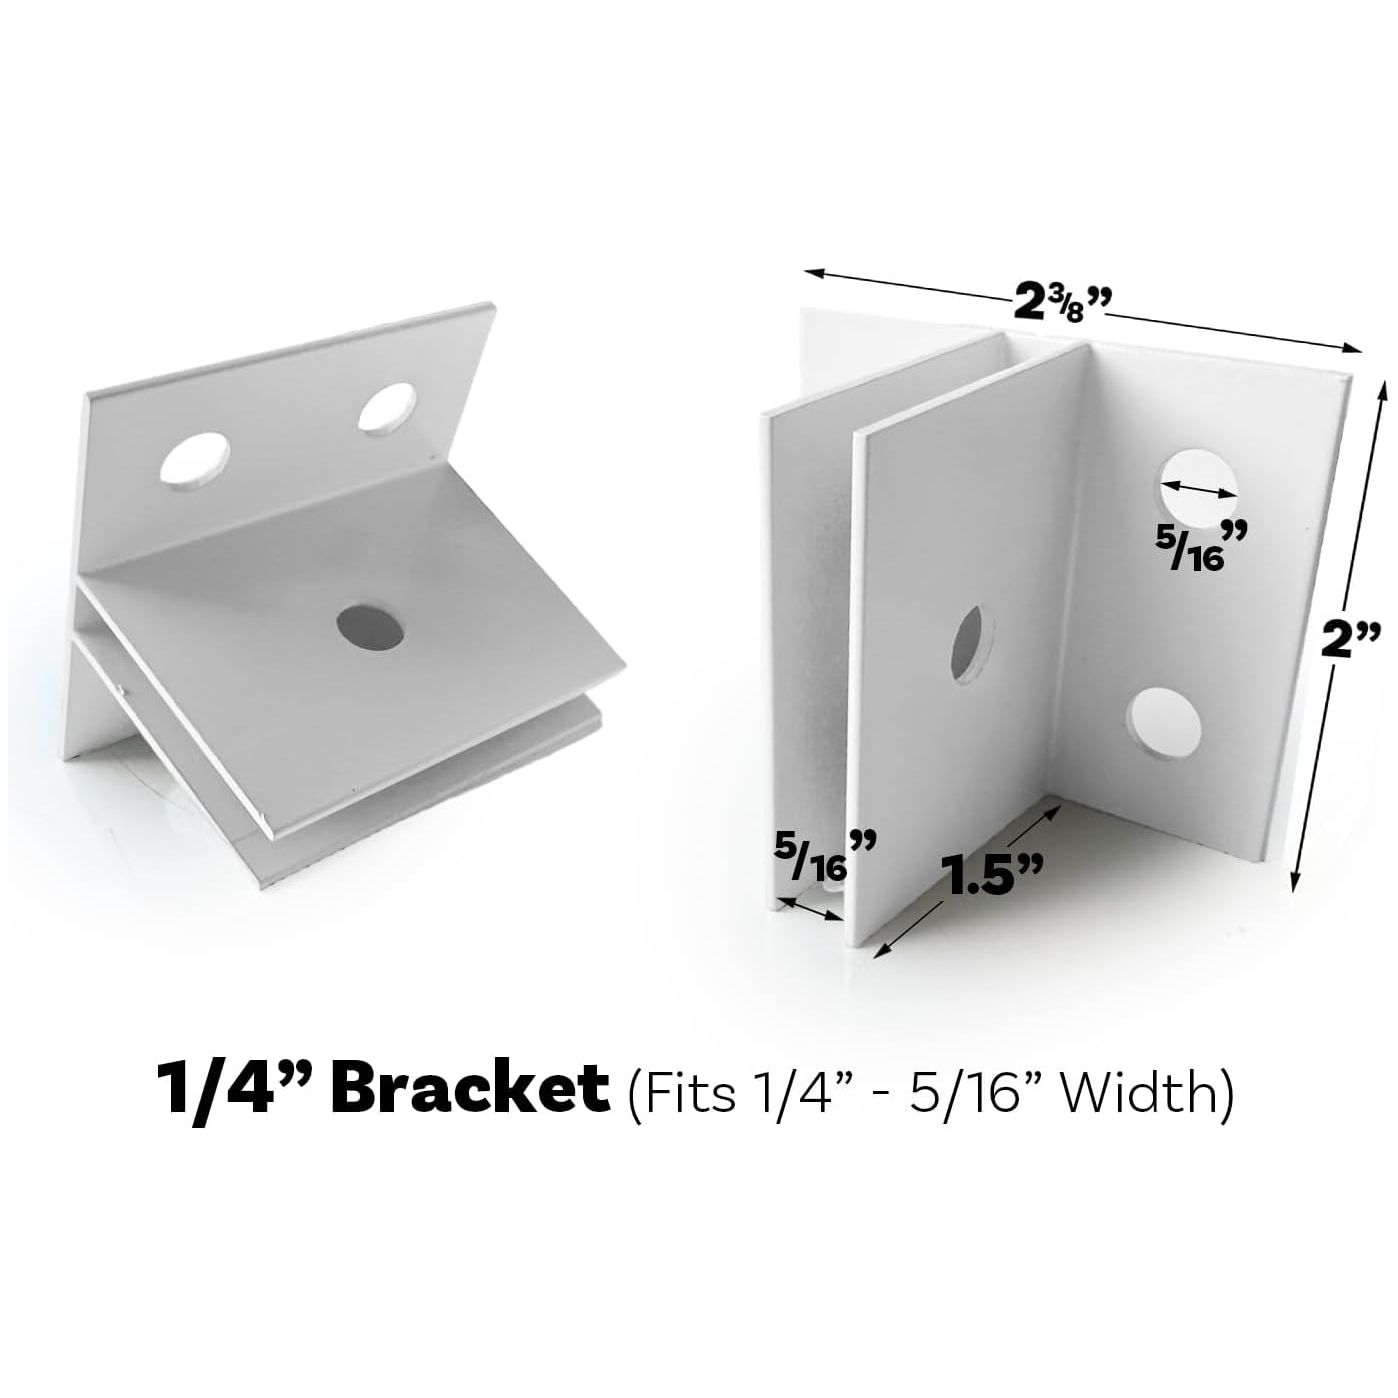 Versatile Mid-Panel Sign Bracket Set - Sleek White Aluminum for Easy Installation